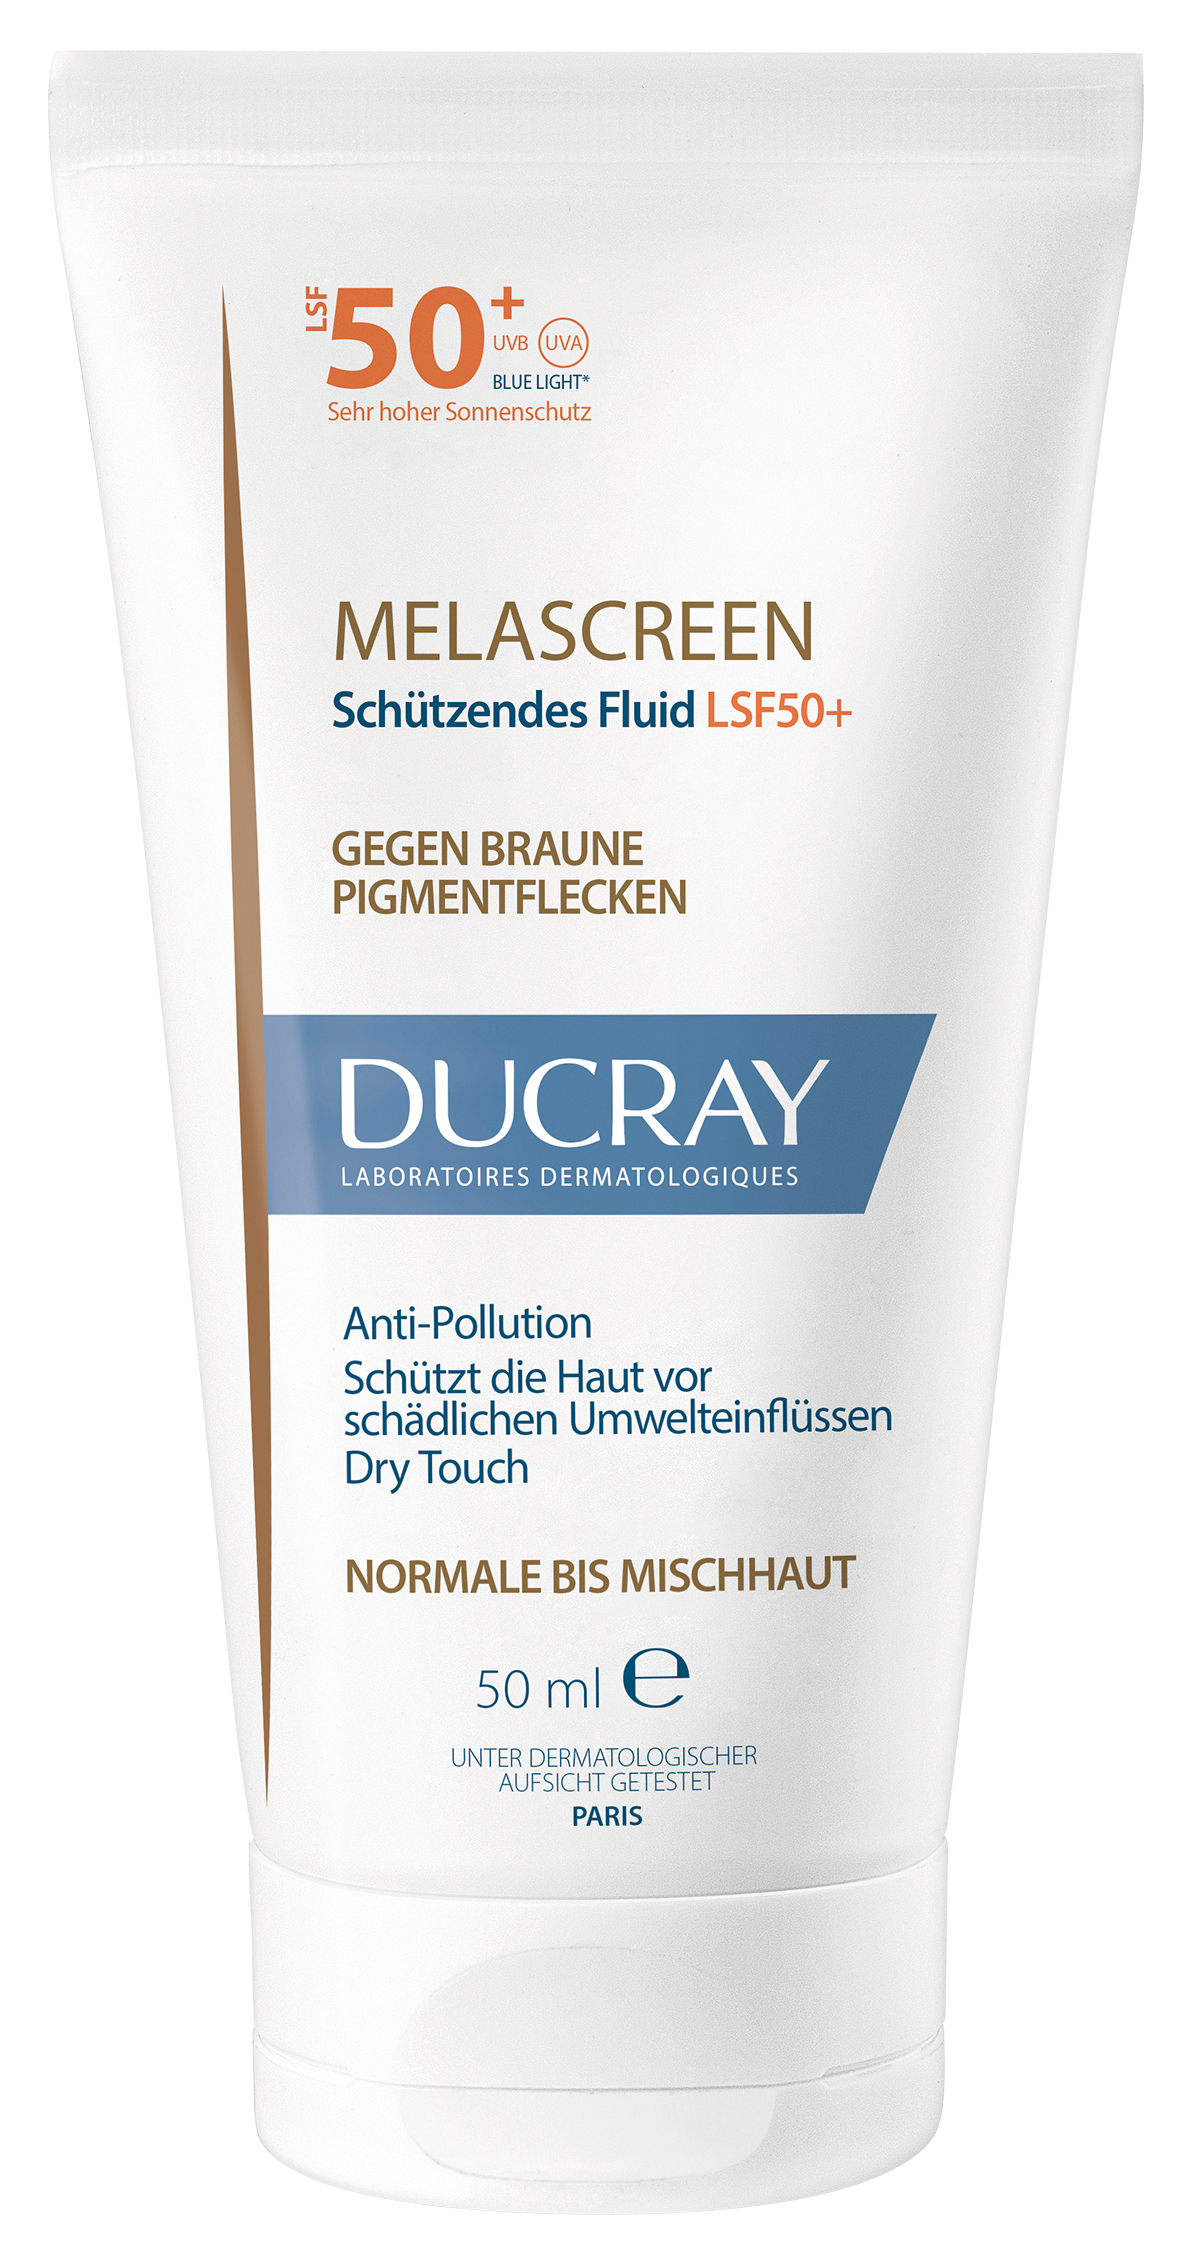 Ducray – MELASCREEN SPF50+ Schützendes Fluid gegen braune Pigmentflecken